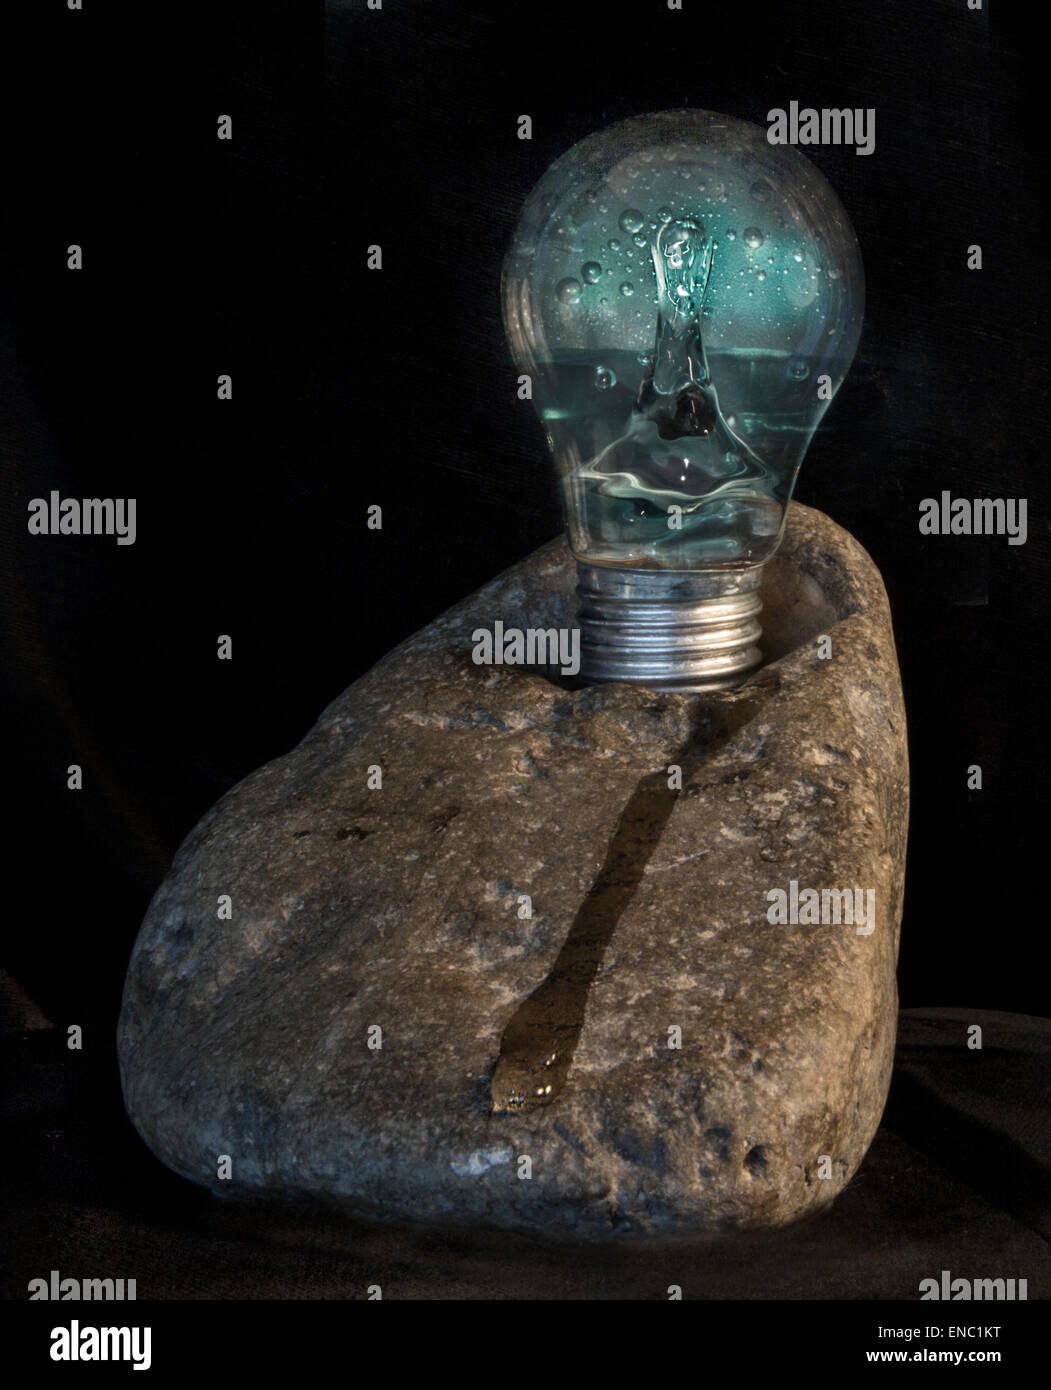 Una immagine creativa di energia idroelettrica rappresentato da uno spruzzo di acqua in una lampadina posta su di una roccia Foto Stock